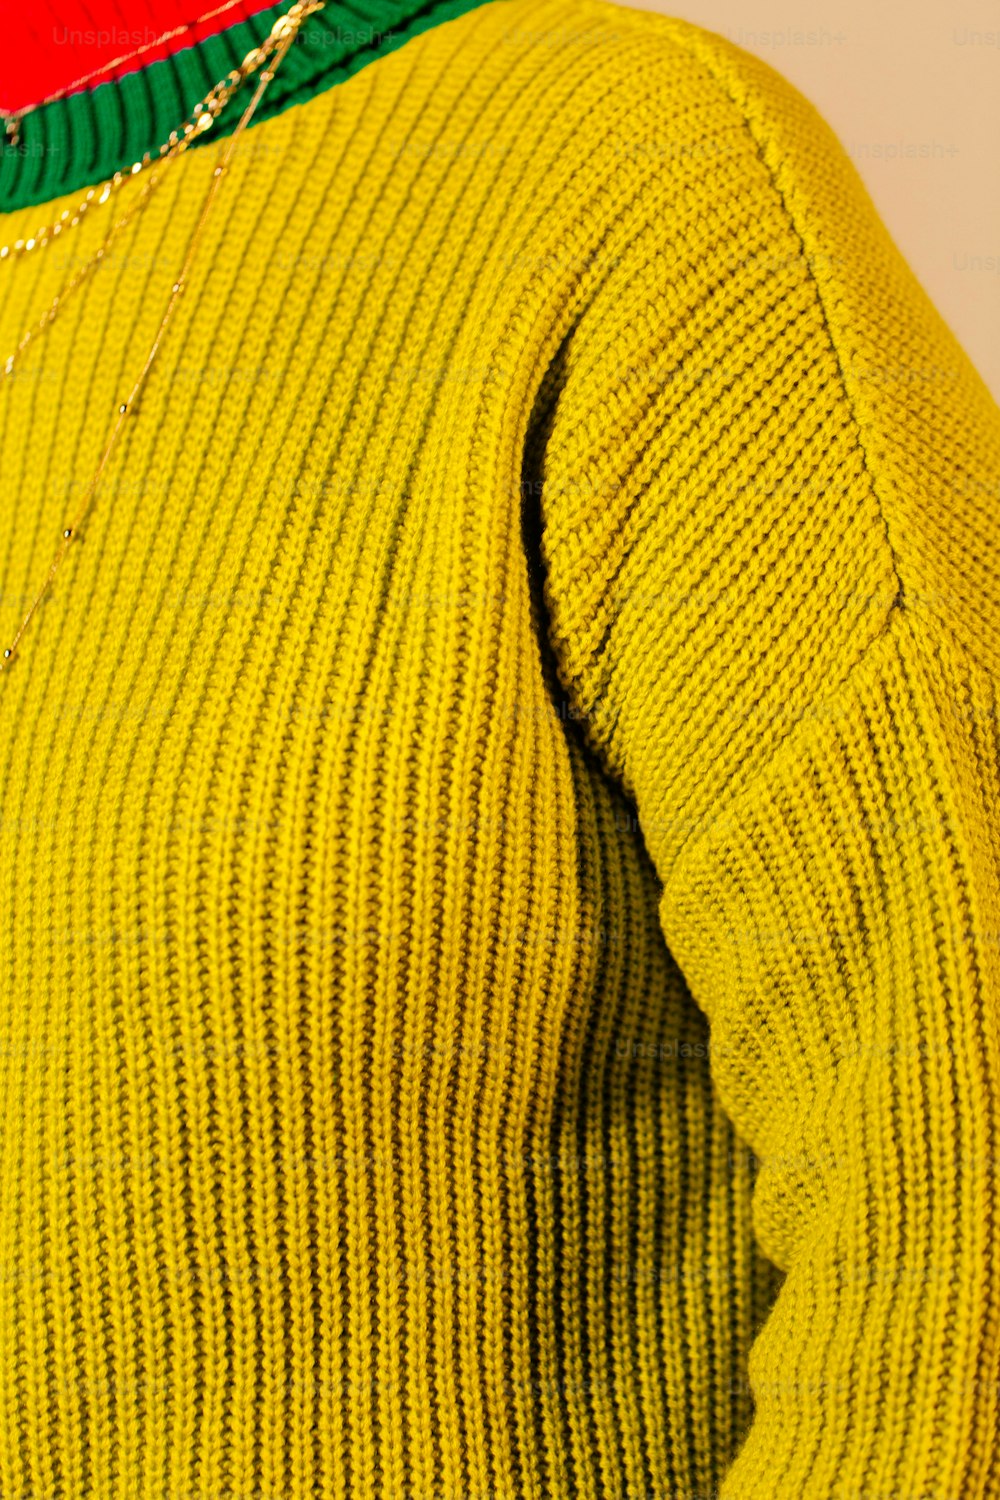 노란색 스웨터를 입은 사람의 클로즈업